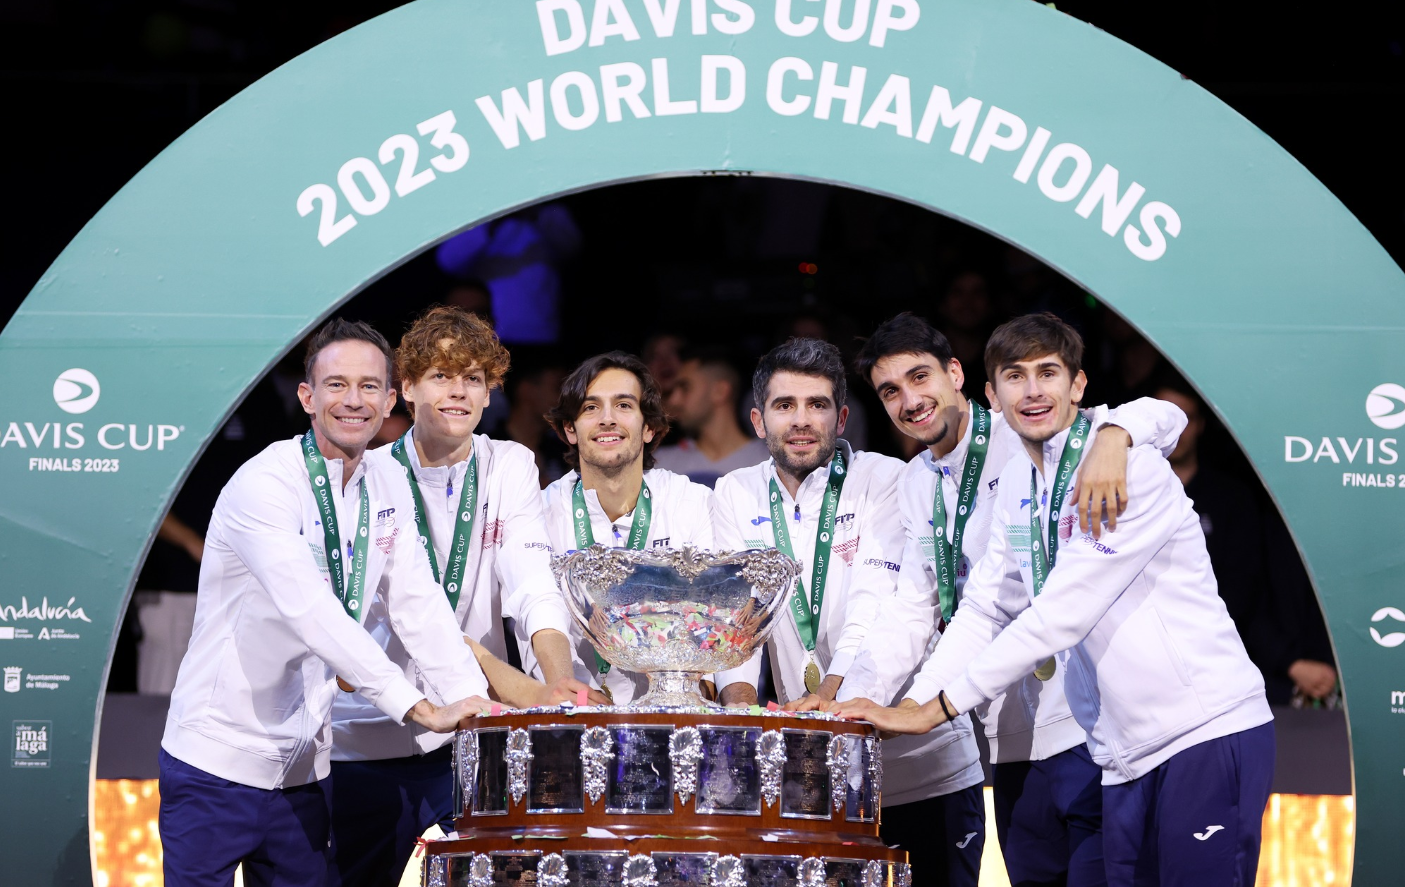 Storica vittoria dell’Italia: seconda Coppa Davis dopo 47 anni